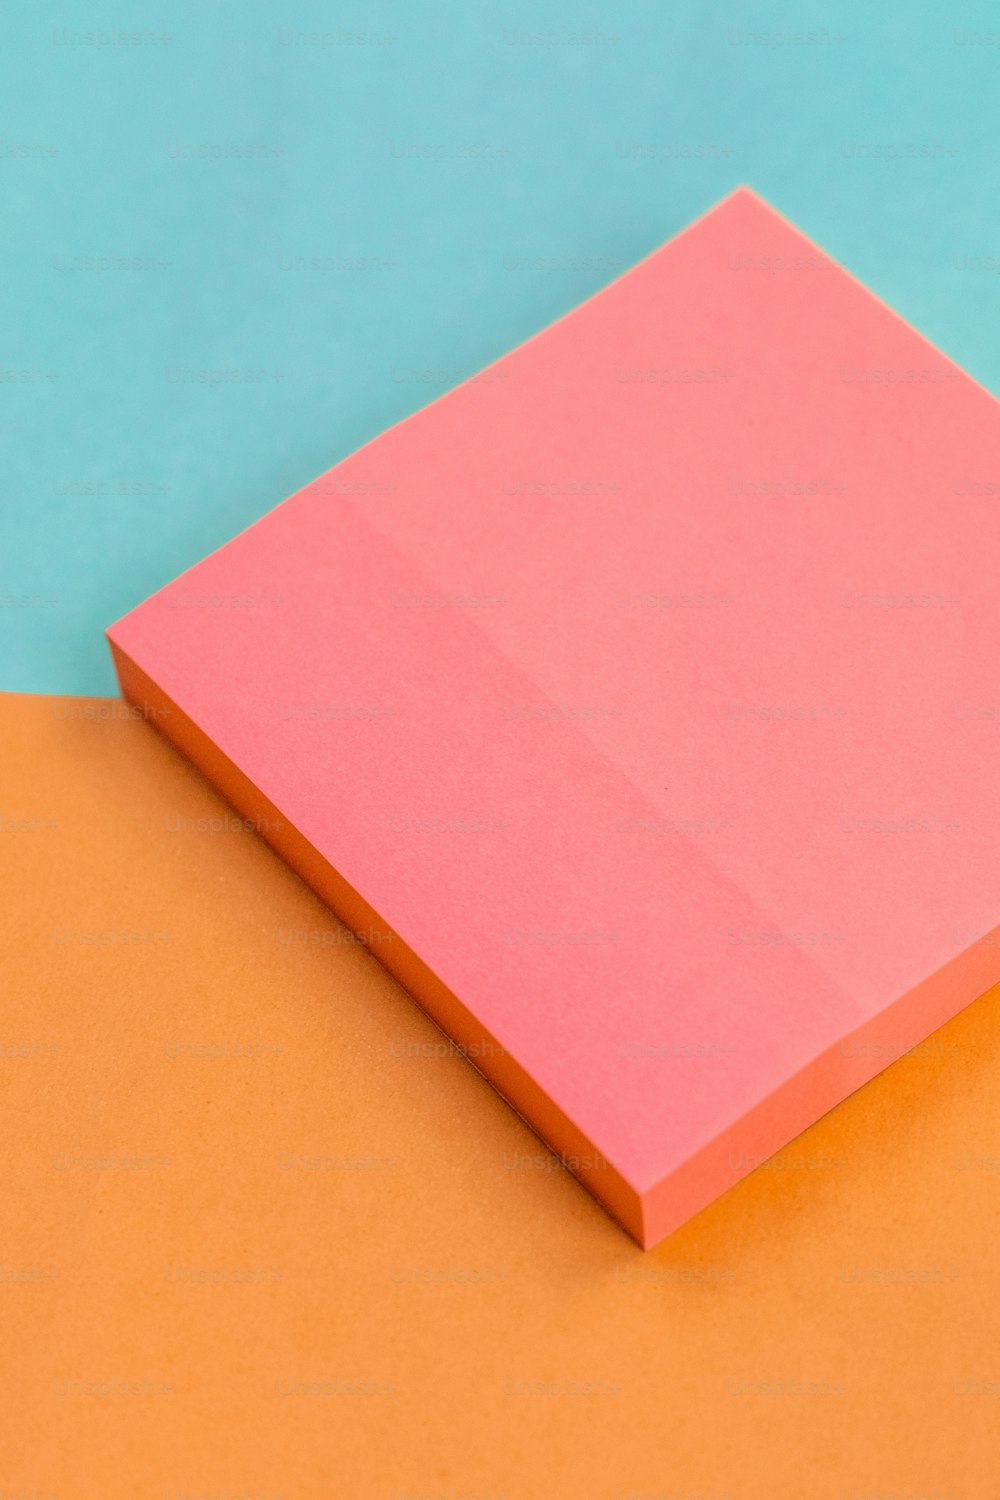 ein Stück rosa Papier, das auf einer orangefarbenen und blauen Oberfläche sitzt